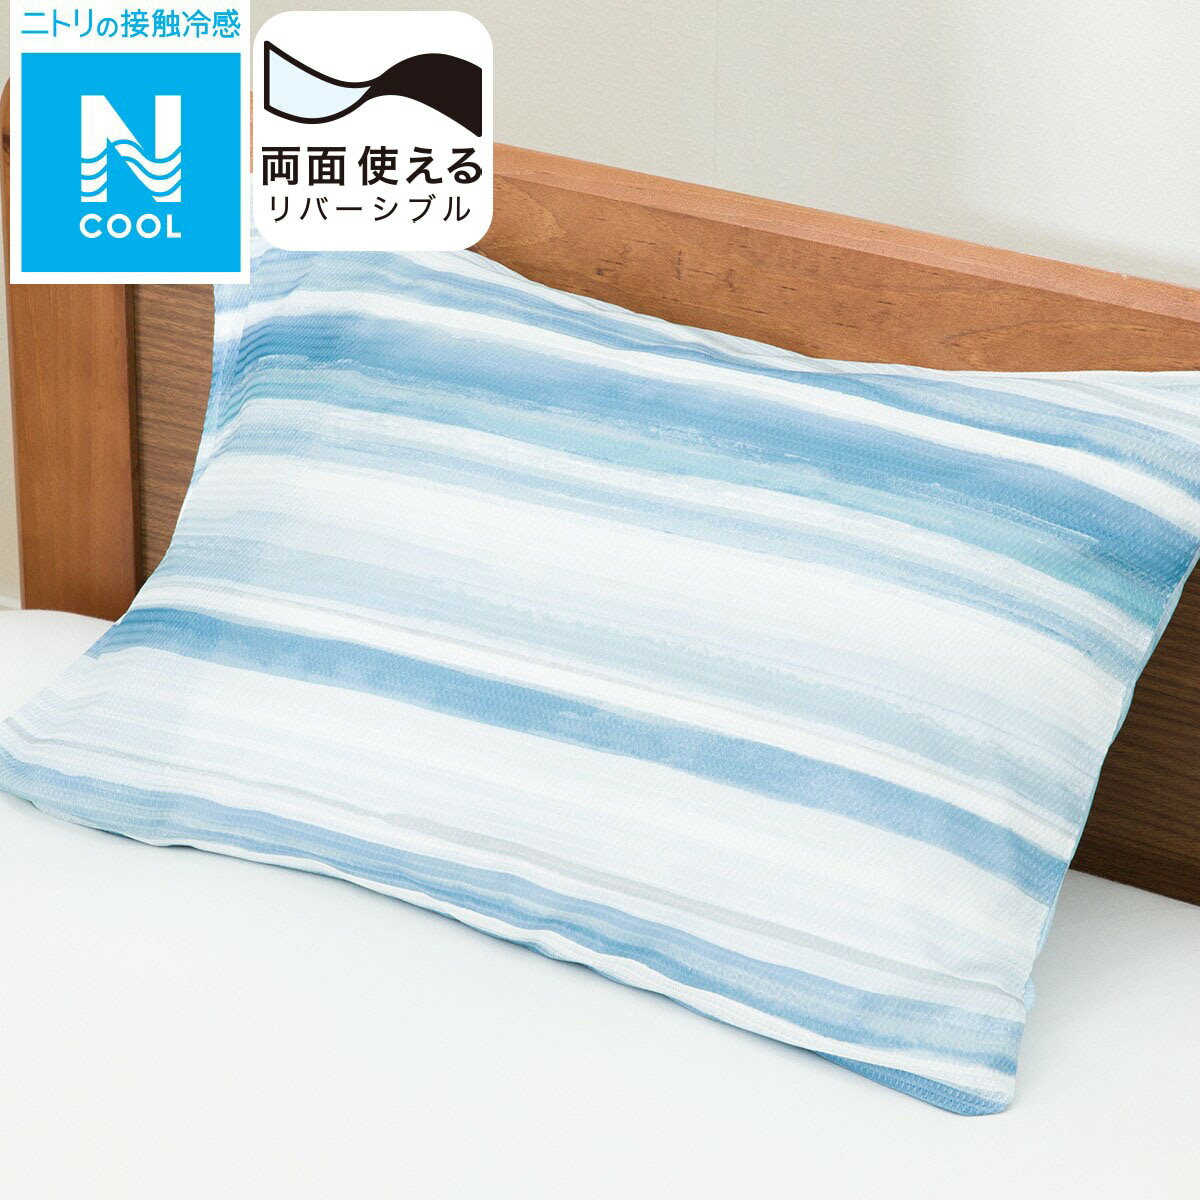 ニトリの枕カバー(Nクール BD 24NC-03)(布団・寝具)